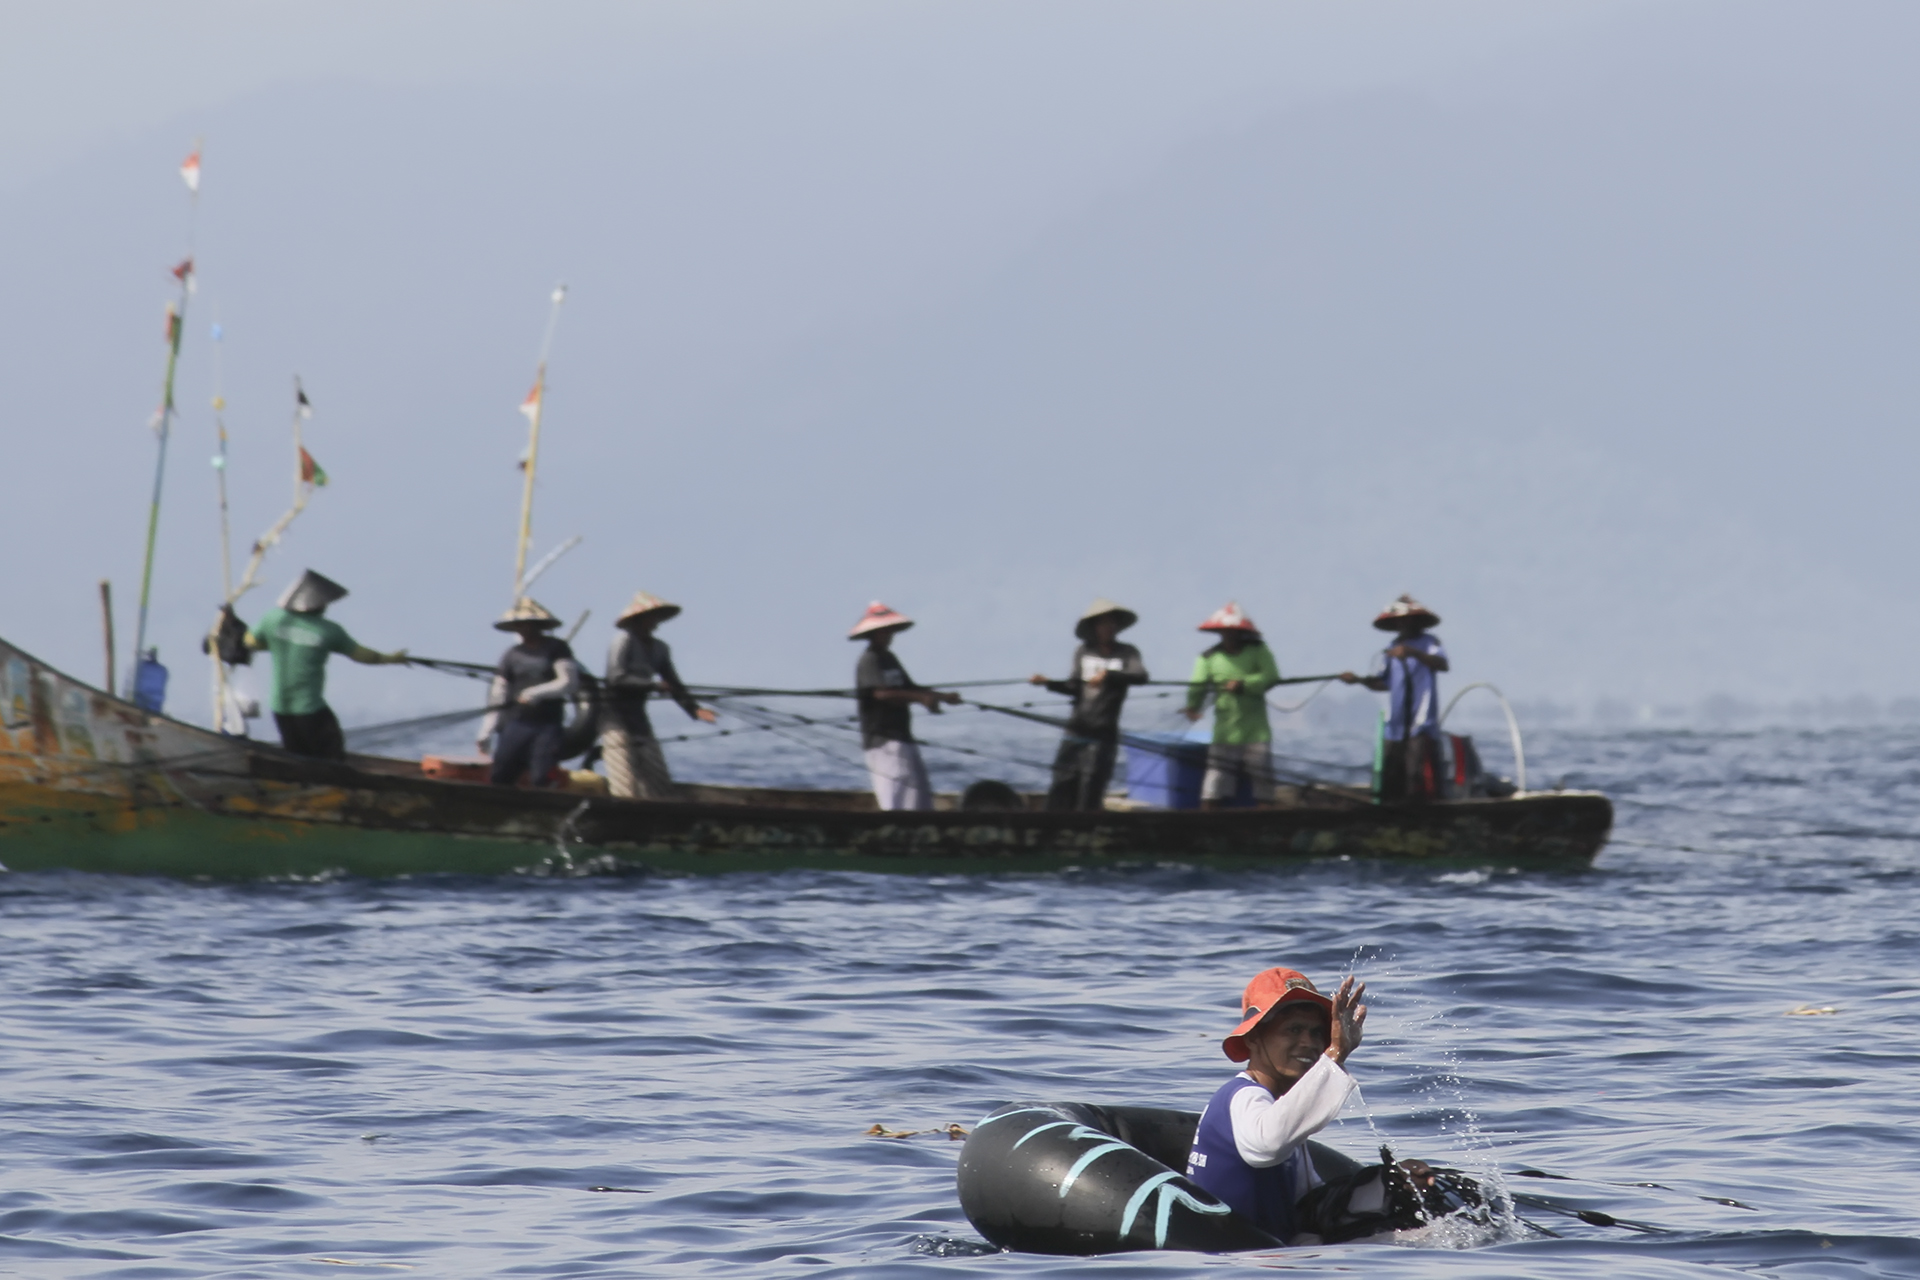 NELAYAN MELAUT | Gambar ini dipotret Juli 14, 2021 menunjukkan nelayan Indonesia di Kota Padang, Sumatera Barat tetap melaut untuk memperoleh rupiah dari hasil tangkapan ikan (?: @tanharimage / Kariadil Harefa)